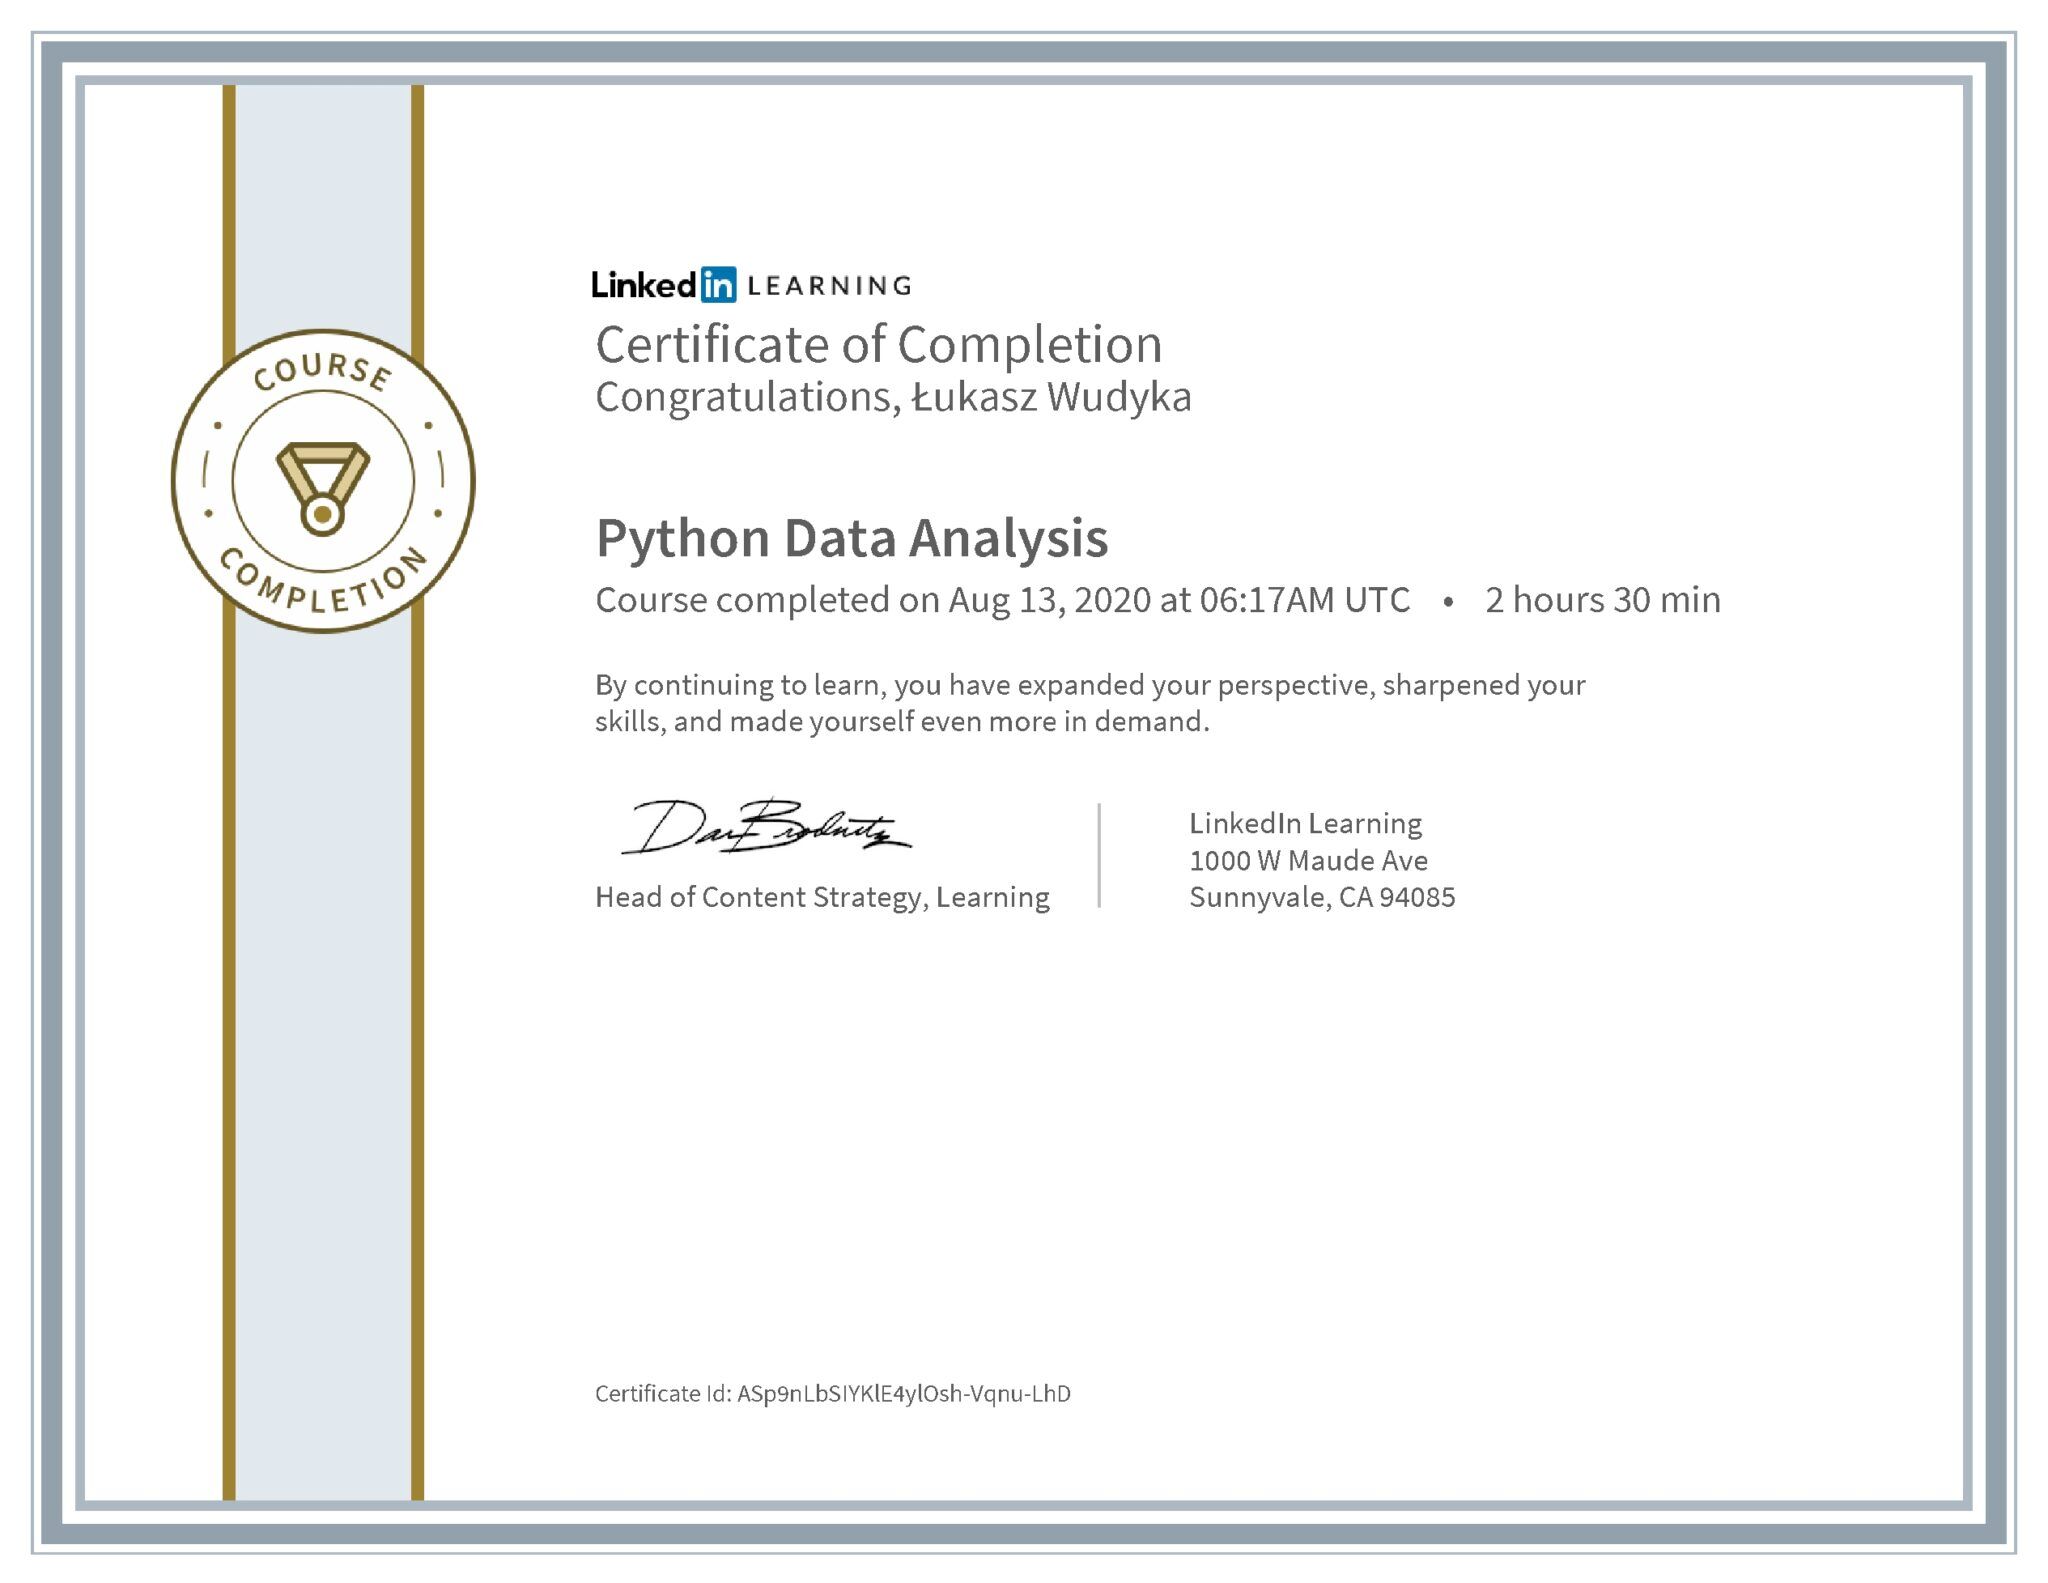 Łukasz Wudyka certyfikat LinkedIn Python Data Analysis